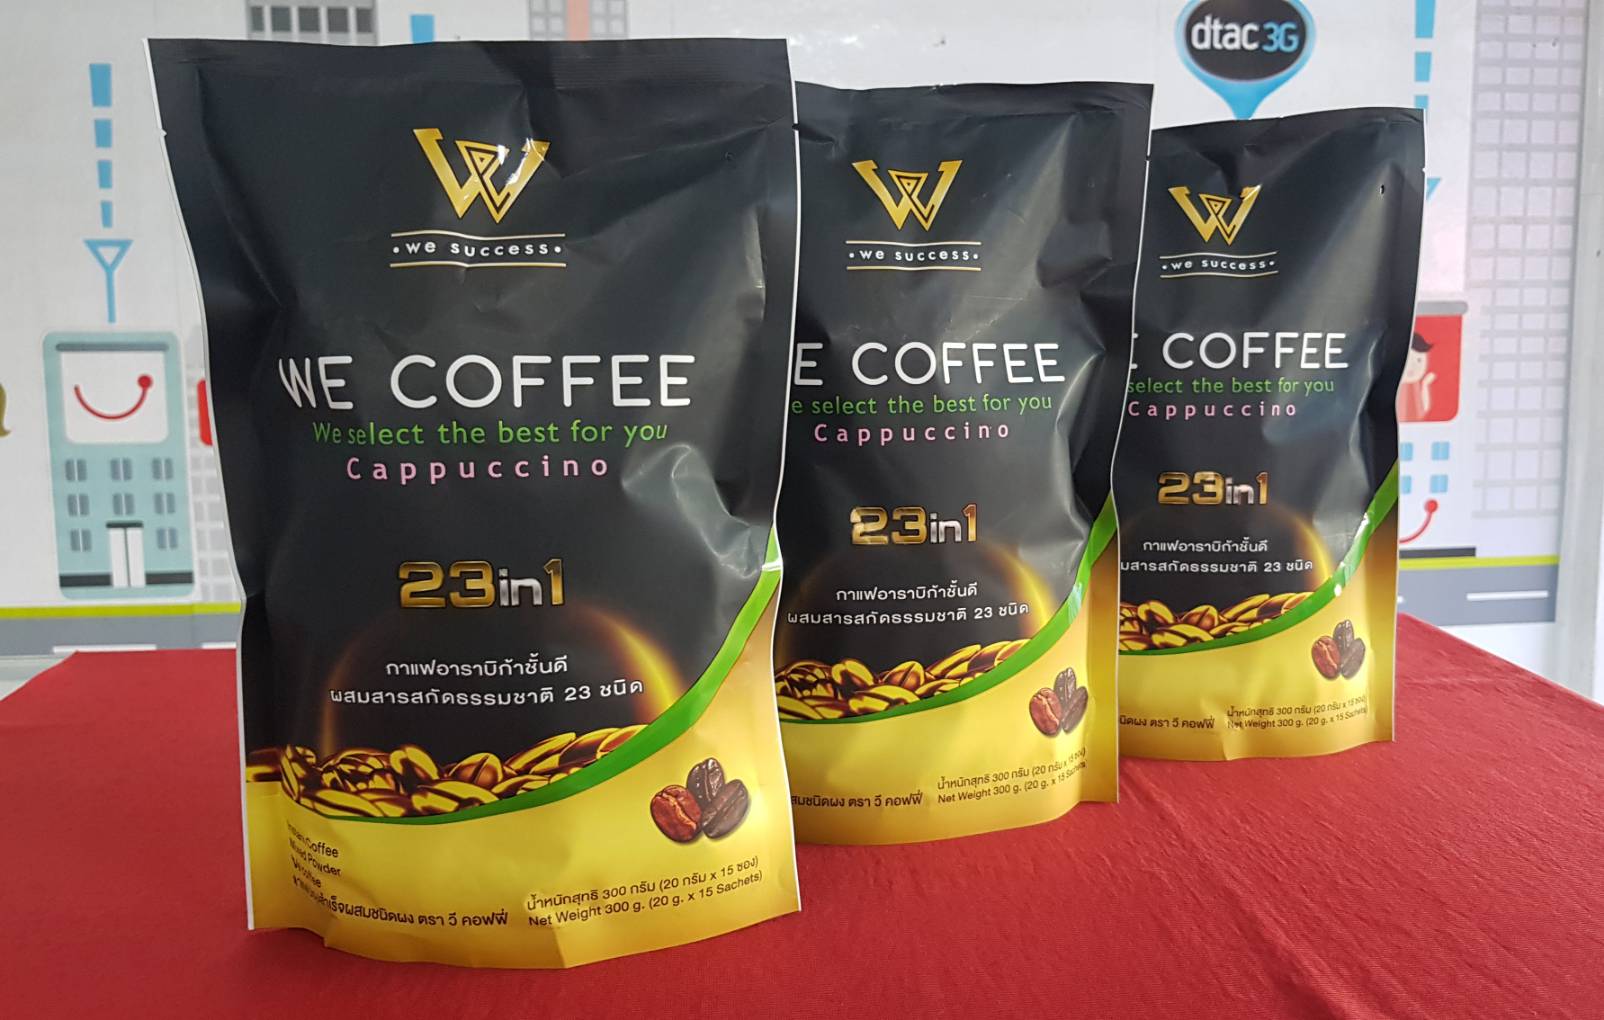 WE COFFEE วี คอฟฟี่ กาแฟอาราบิก้า กาแฟเพื่อสุขภาพ กาแฟปรุงสำเร็จผสมชนิดผง ผสมสารสกัด ธรรมชาติ 23 ชนิด ใน 1 ห่อ กาแฟสมุนไพร ไม่มีน้ำตาล มีส่วนผสมของ ครีมเทียมถั่วเหลือง ผงโกโก้ ผงถั่งเช่า ที่ช่วยลดระดับน้ำตาลและไขมันในเลือด